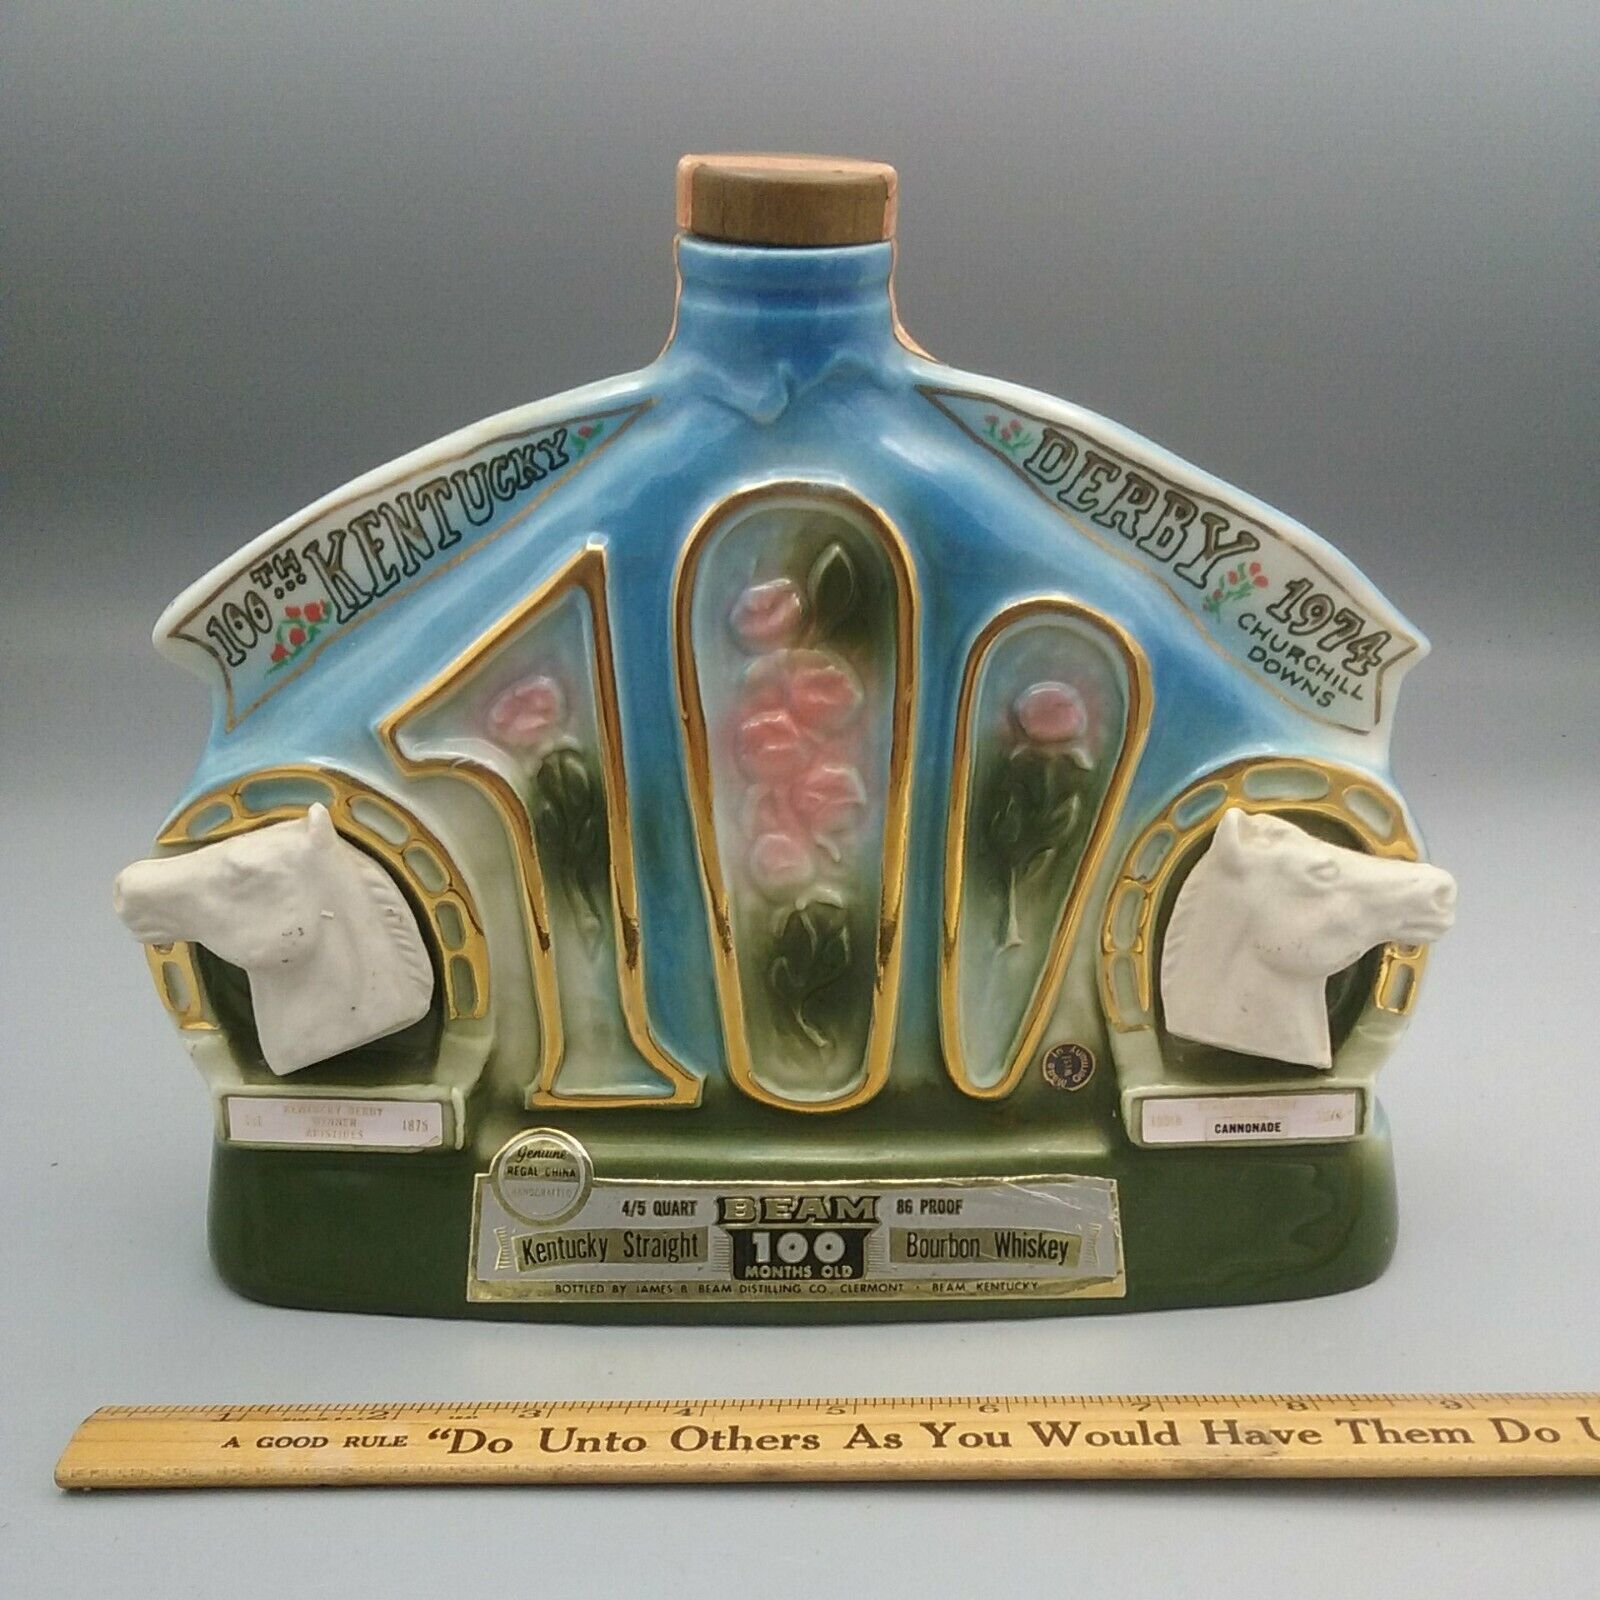 1974 Churchill Downs 100th Kentucky Derby Beam Kentucky Straight Liquor Bottle